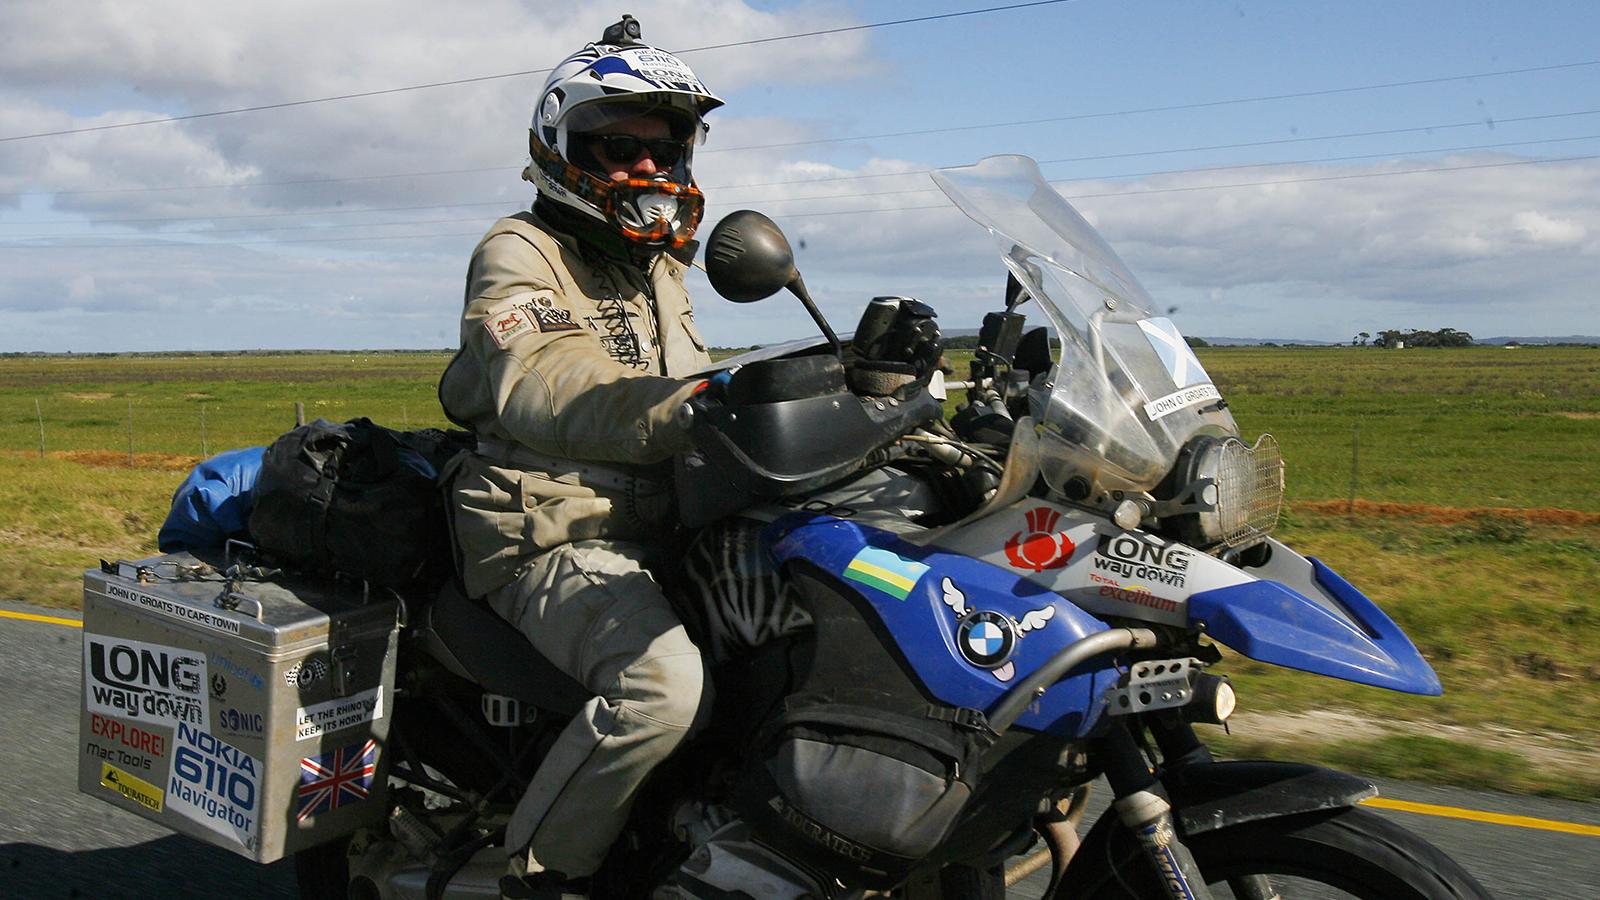 År 2007 körde Ewan McGregor och skådespelarkollegan Charley Boorman motorcykel från Skottland till Afrikas sydligaste udde Cape L’Agulhas utanför Kapstaden i Sydafrika. Resan tog 85 dagar.